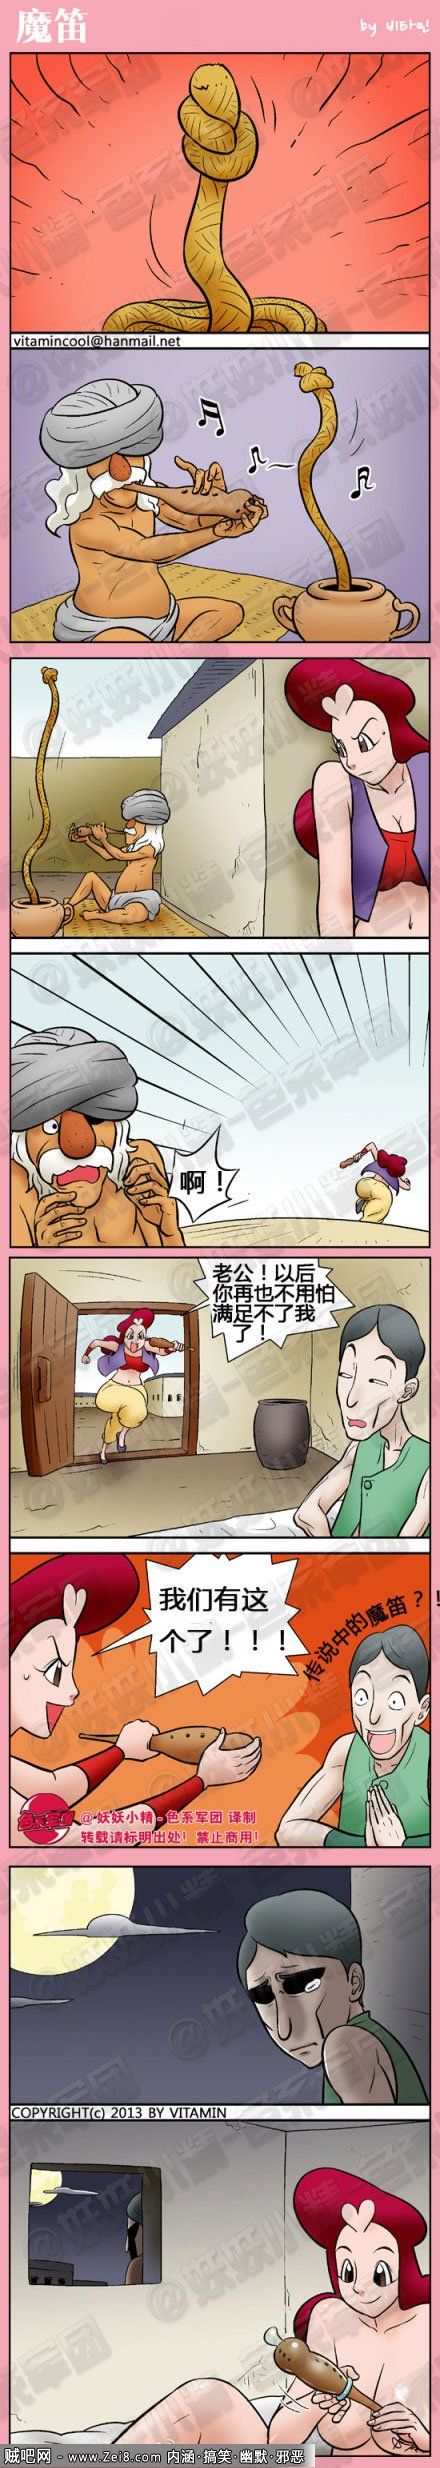 [2013年韩国漫画合集]：你想多了